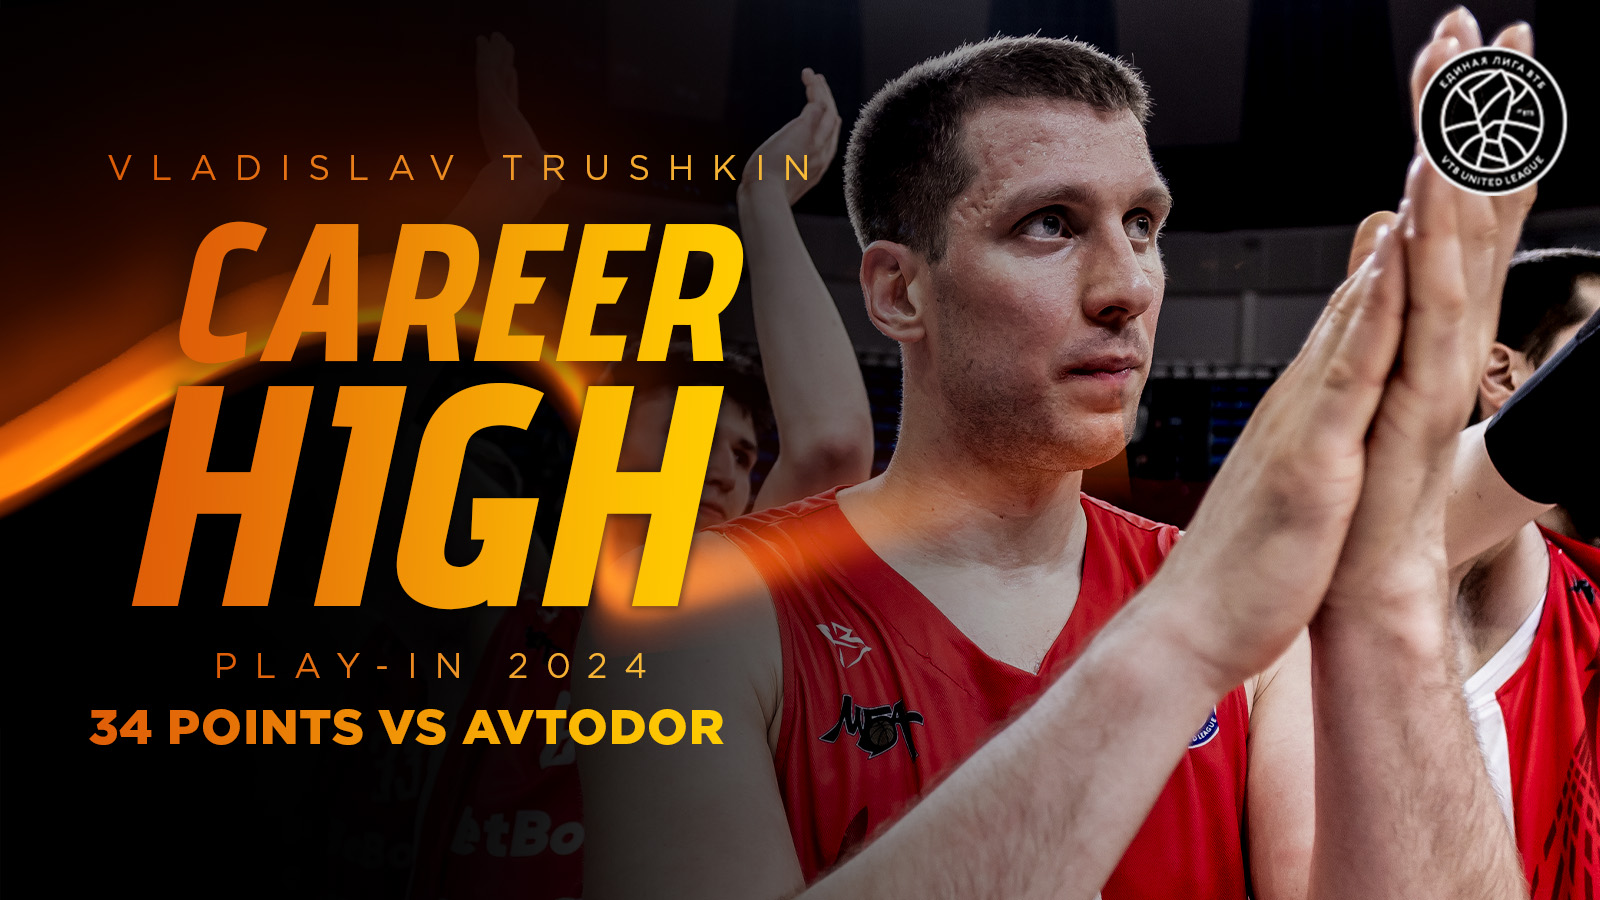 Vladislav Trushkin scored a career-high 34 points against Avtodor